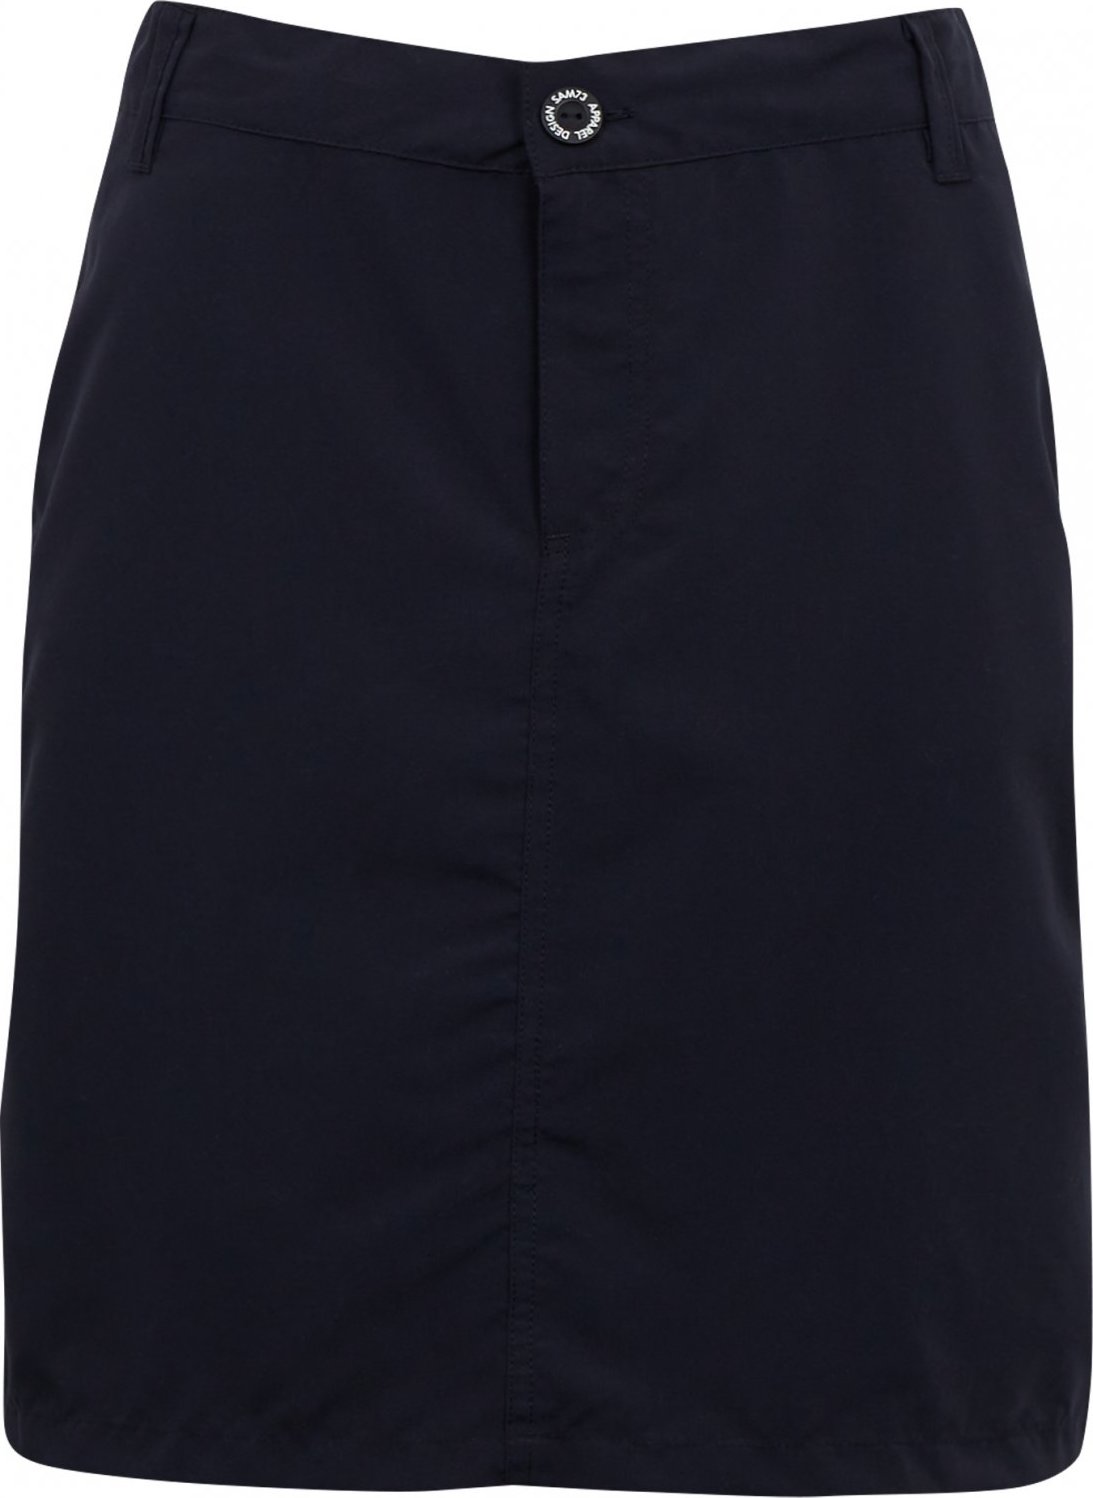 Dámská sukně SAM 73 Reticulum modrá Velikost: XL